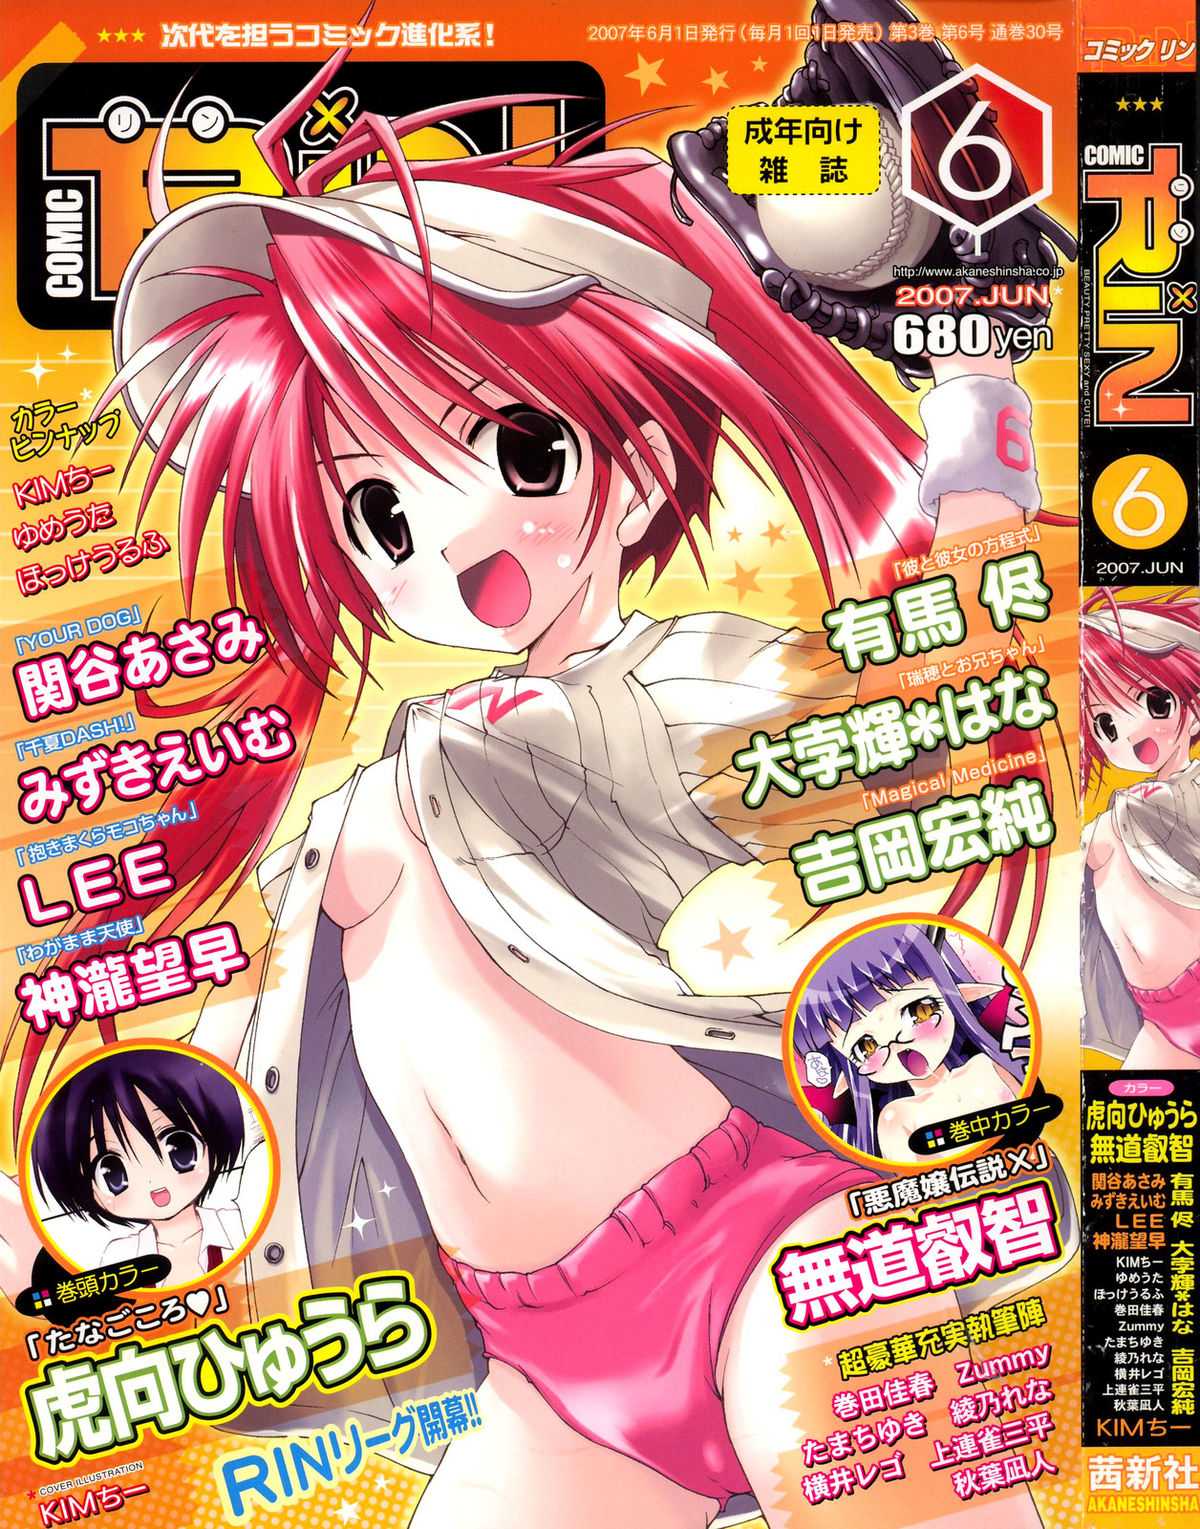 Comic Rin Vol. 30 [2007-06] Comic RIN Vol. 30 2007年 6月